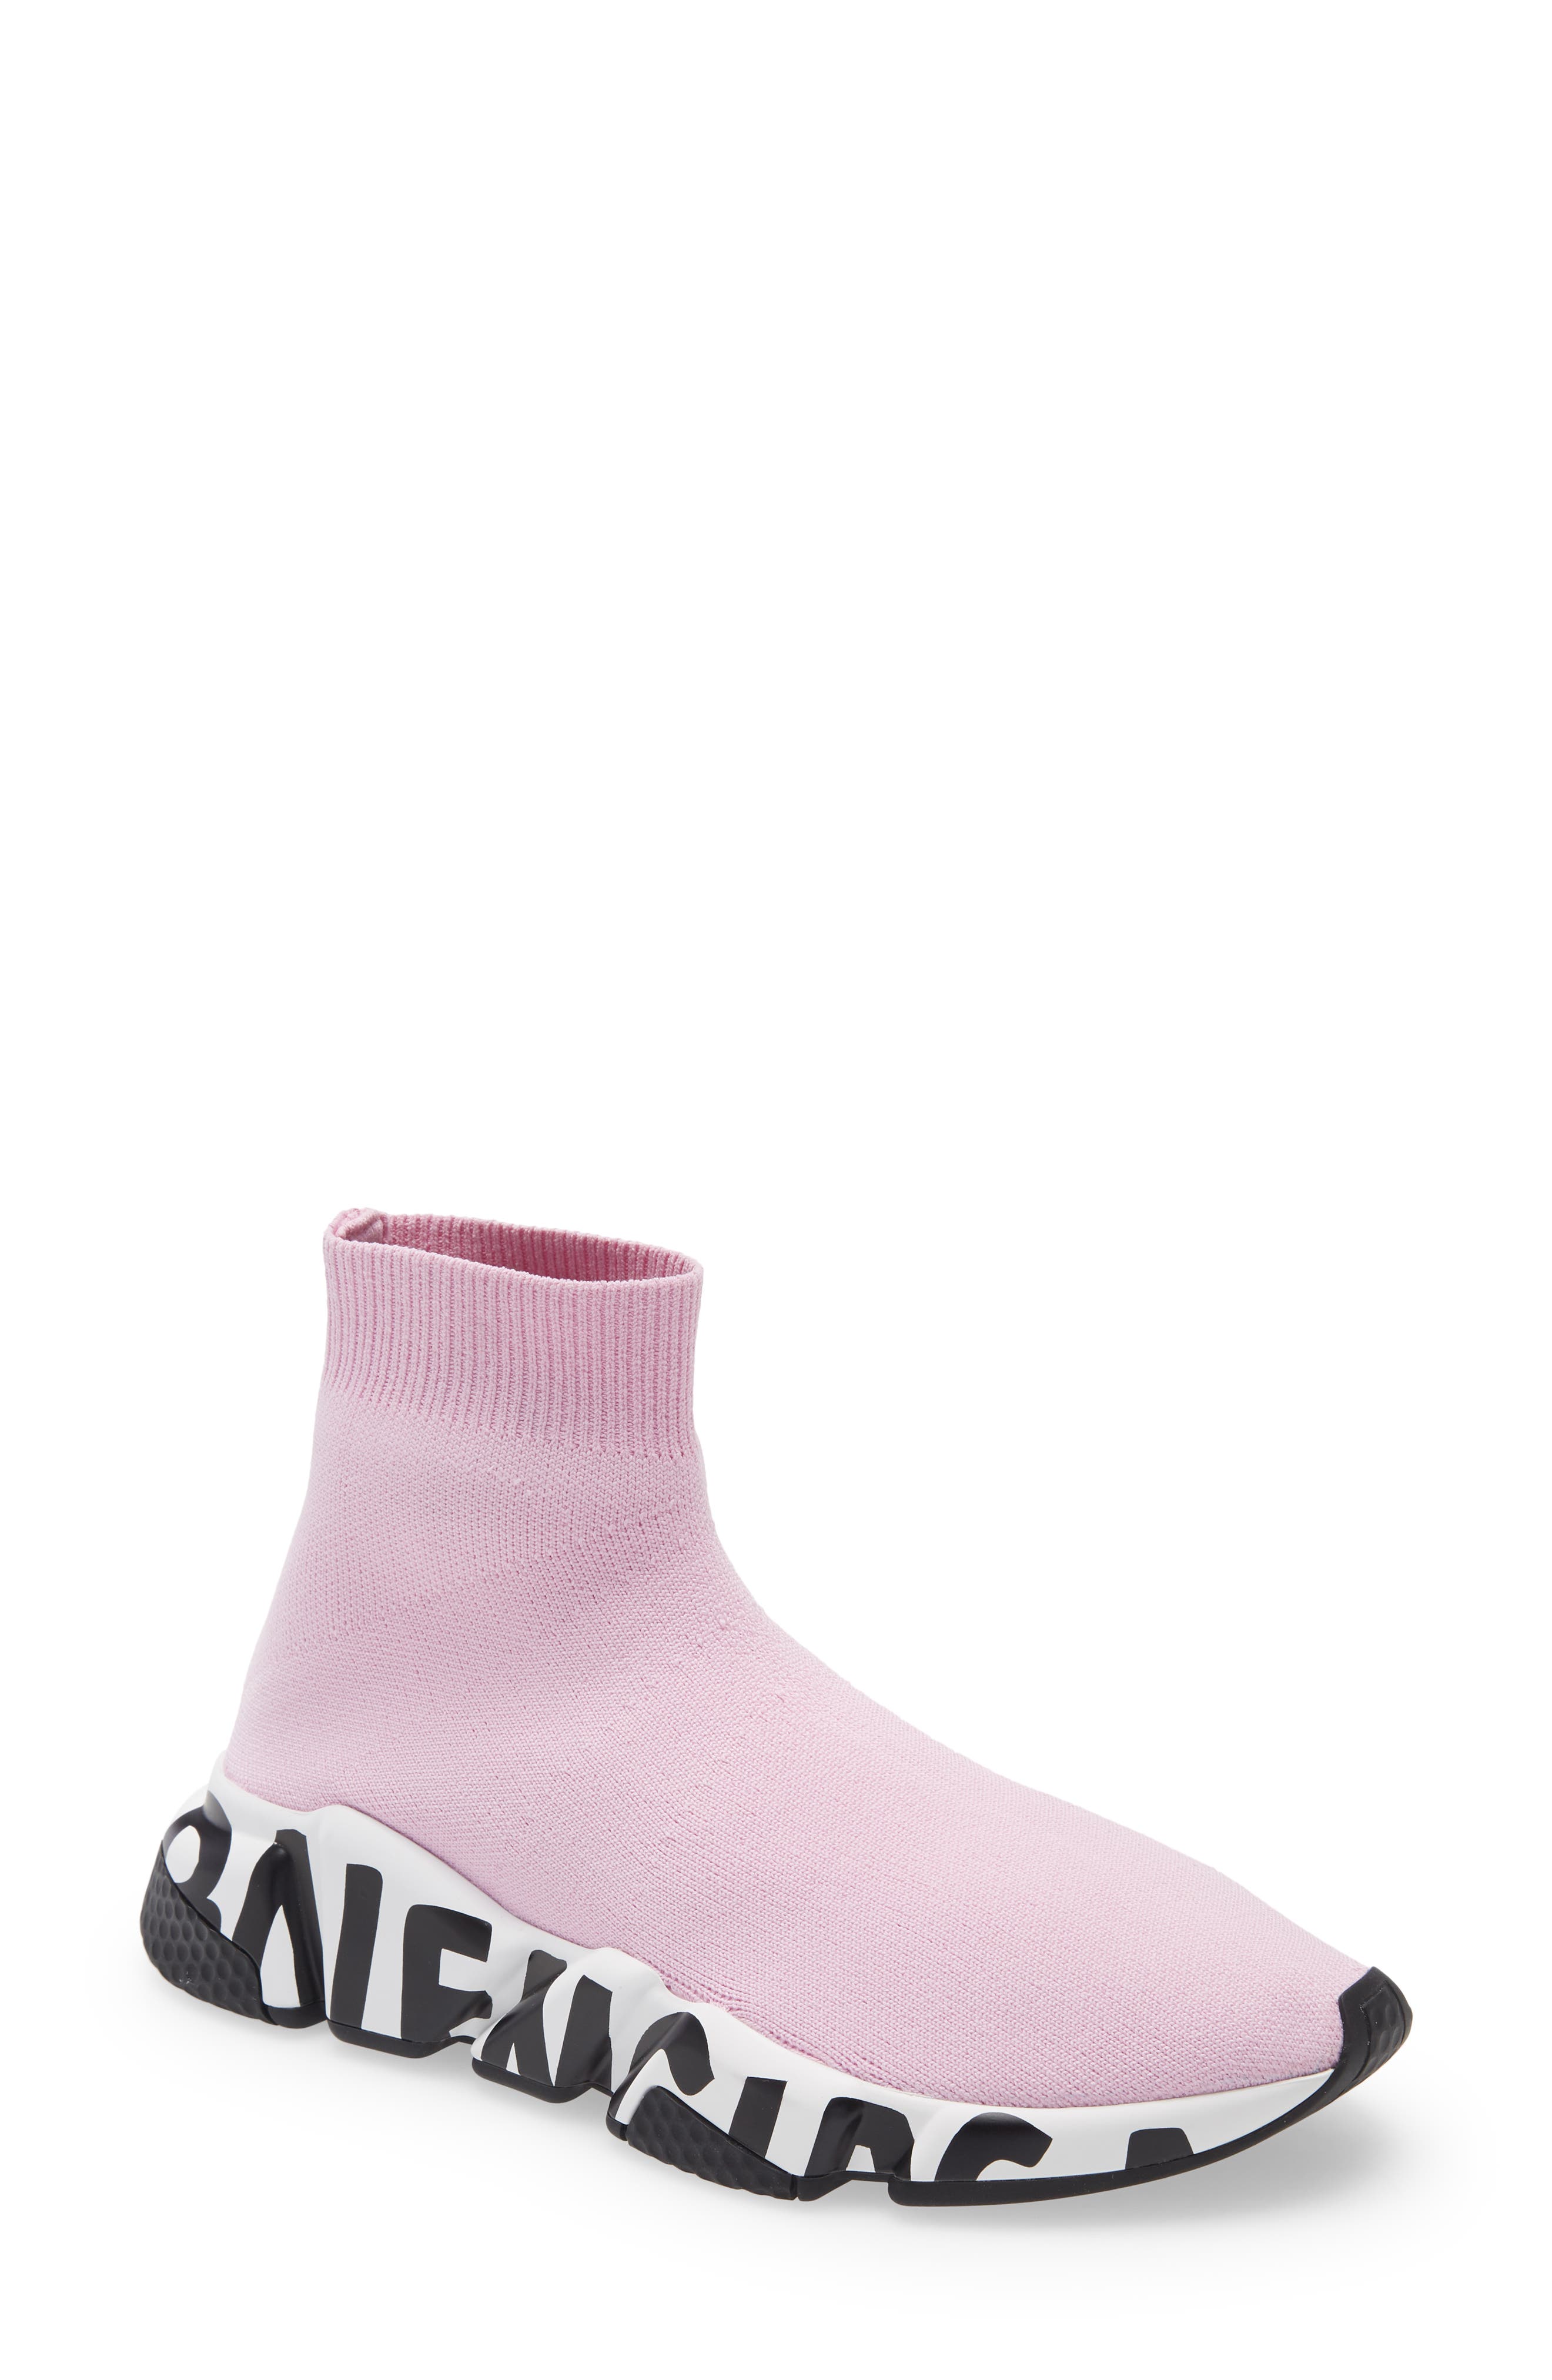 balenciaga sock shoes mens pink